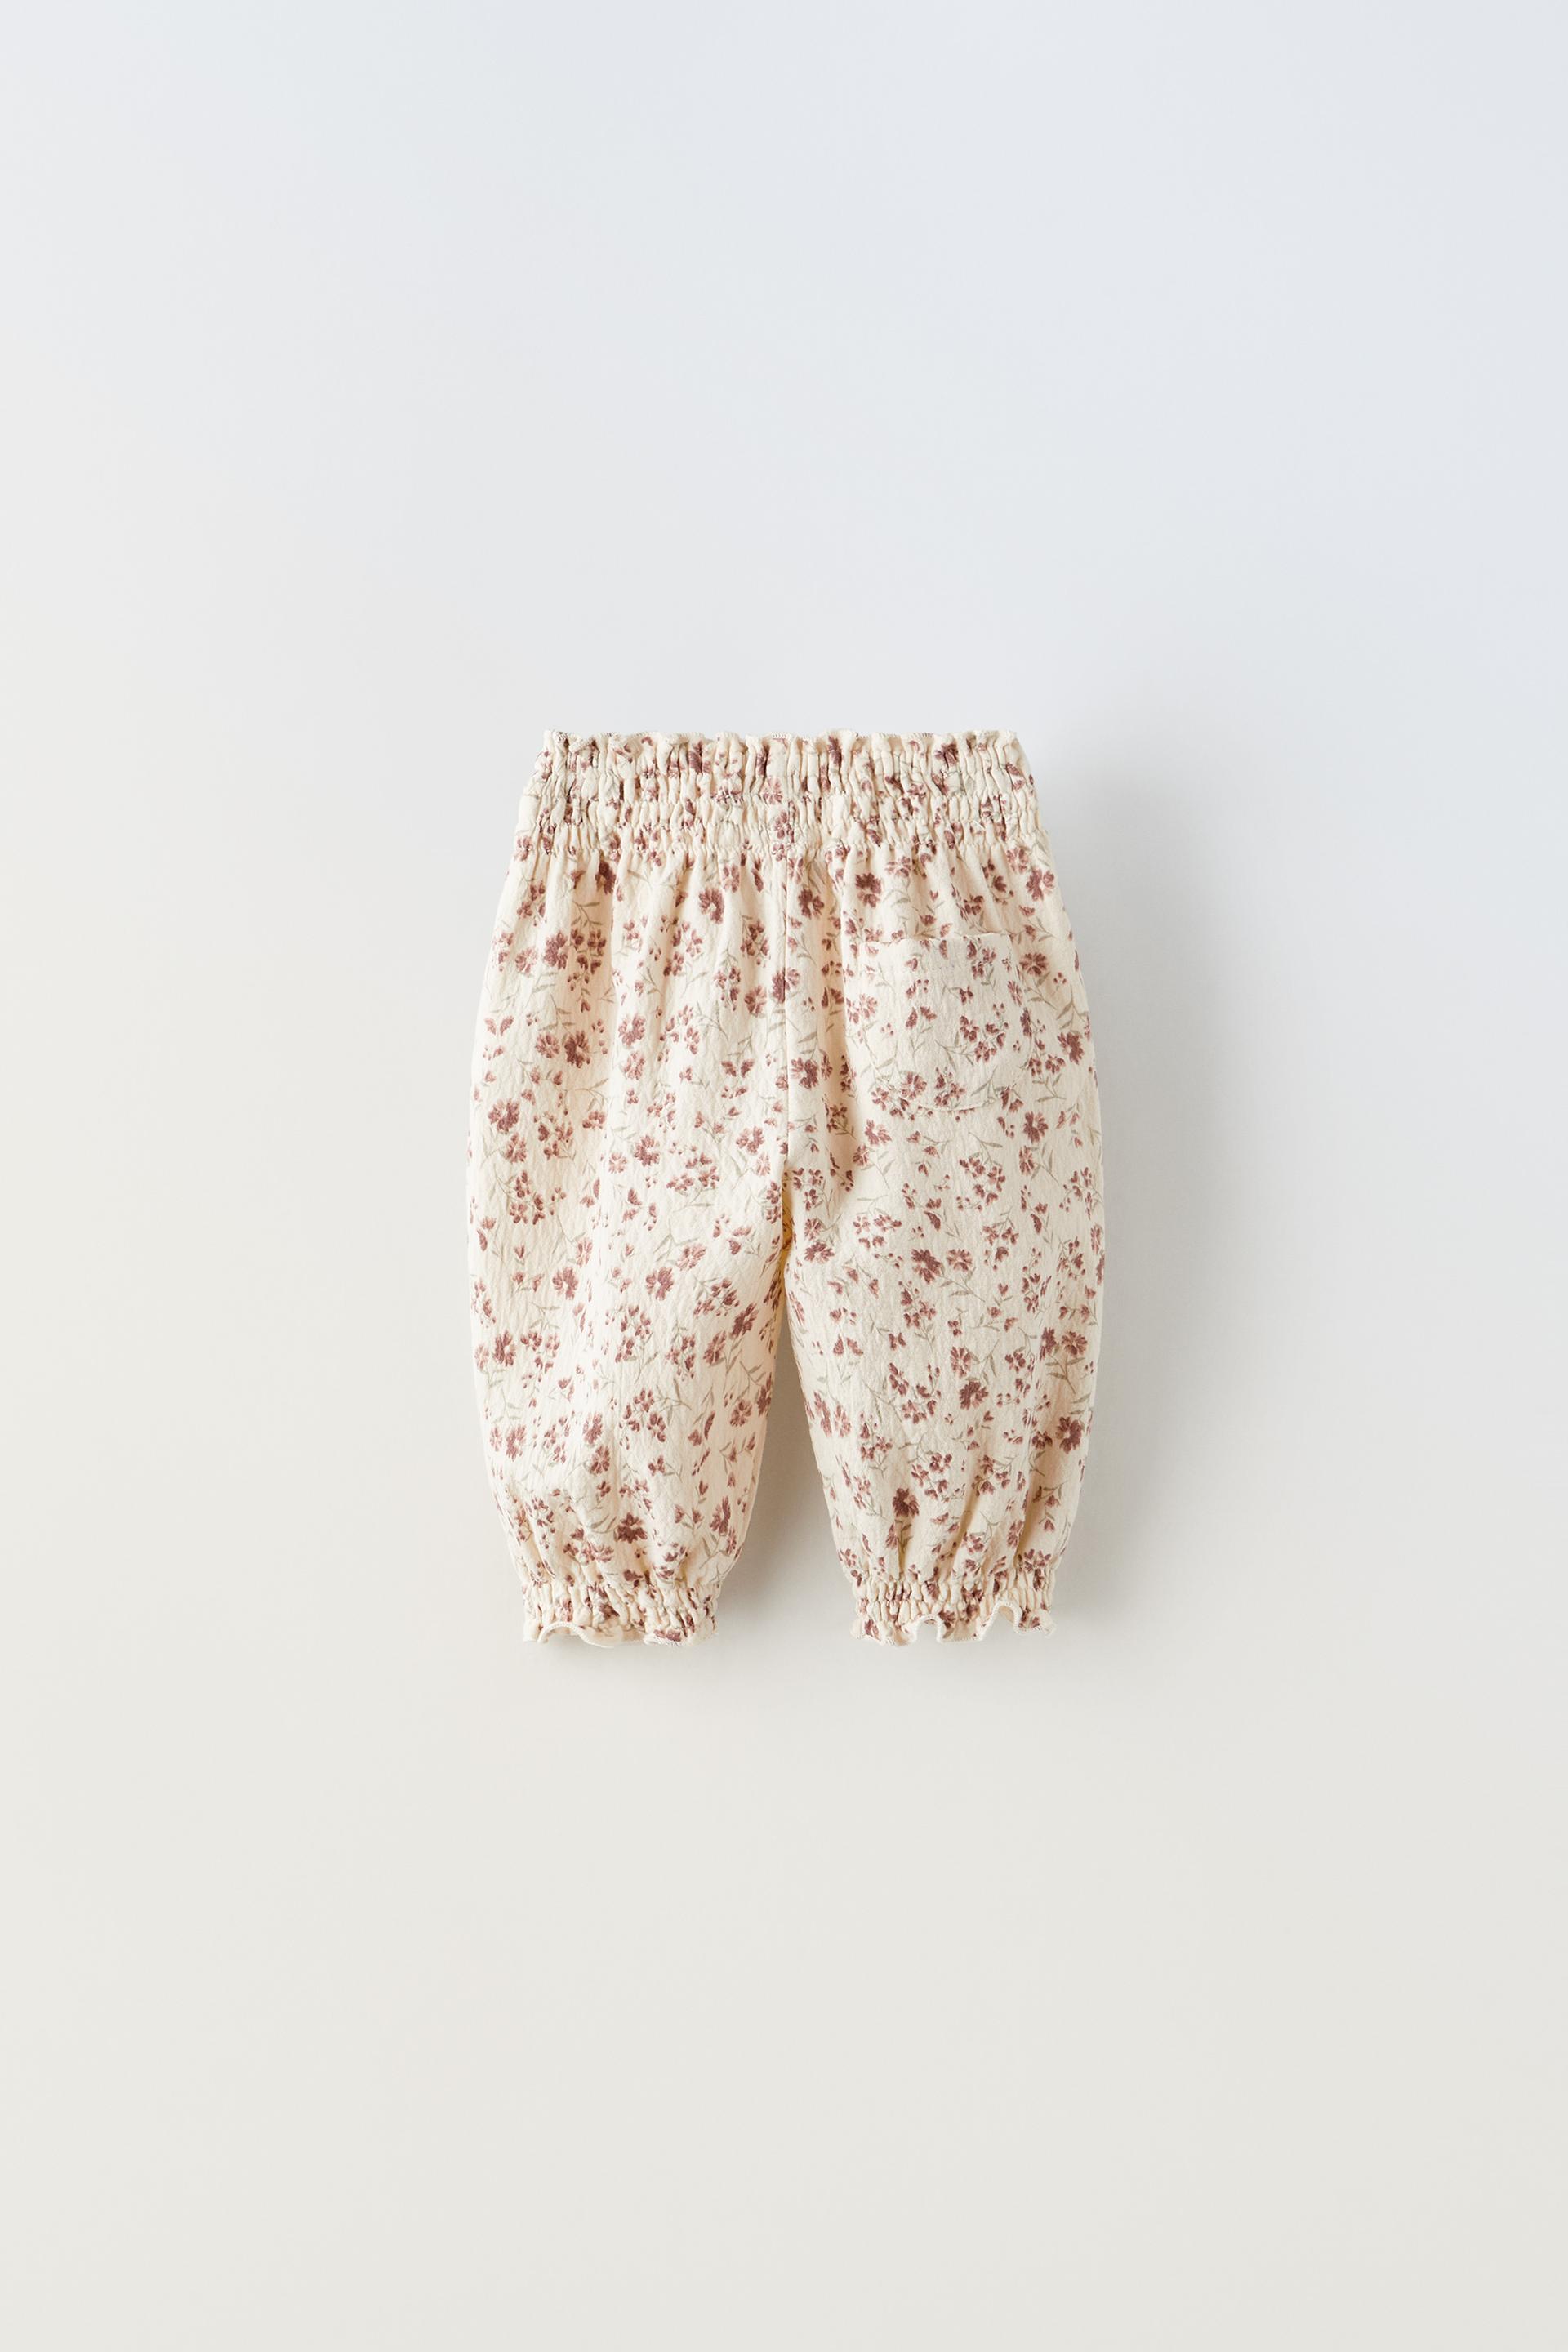 Zara Floral Pants